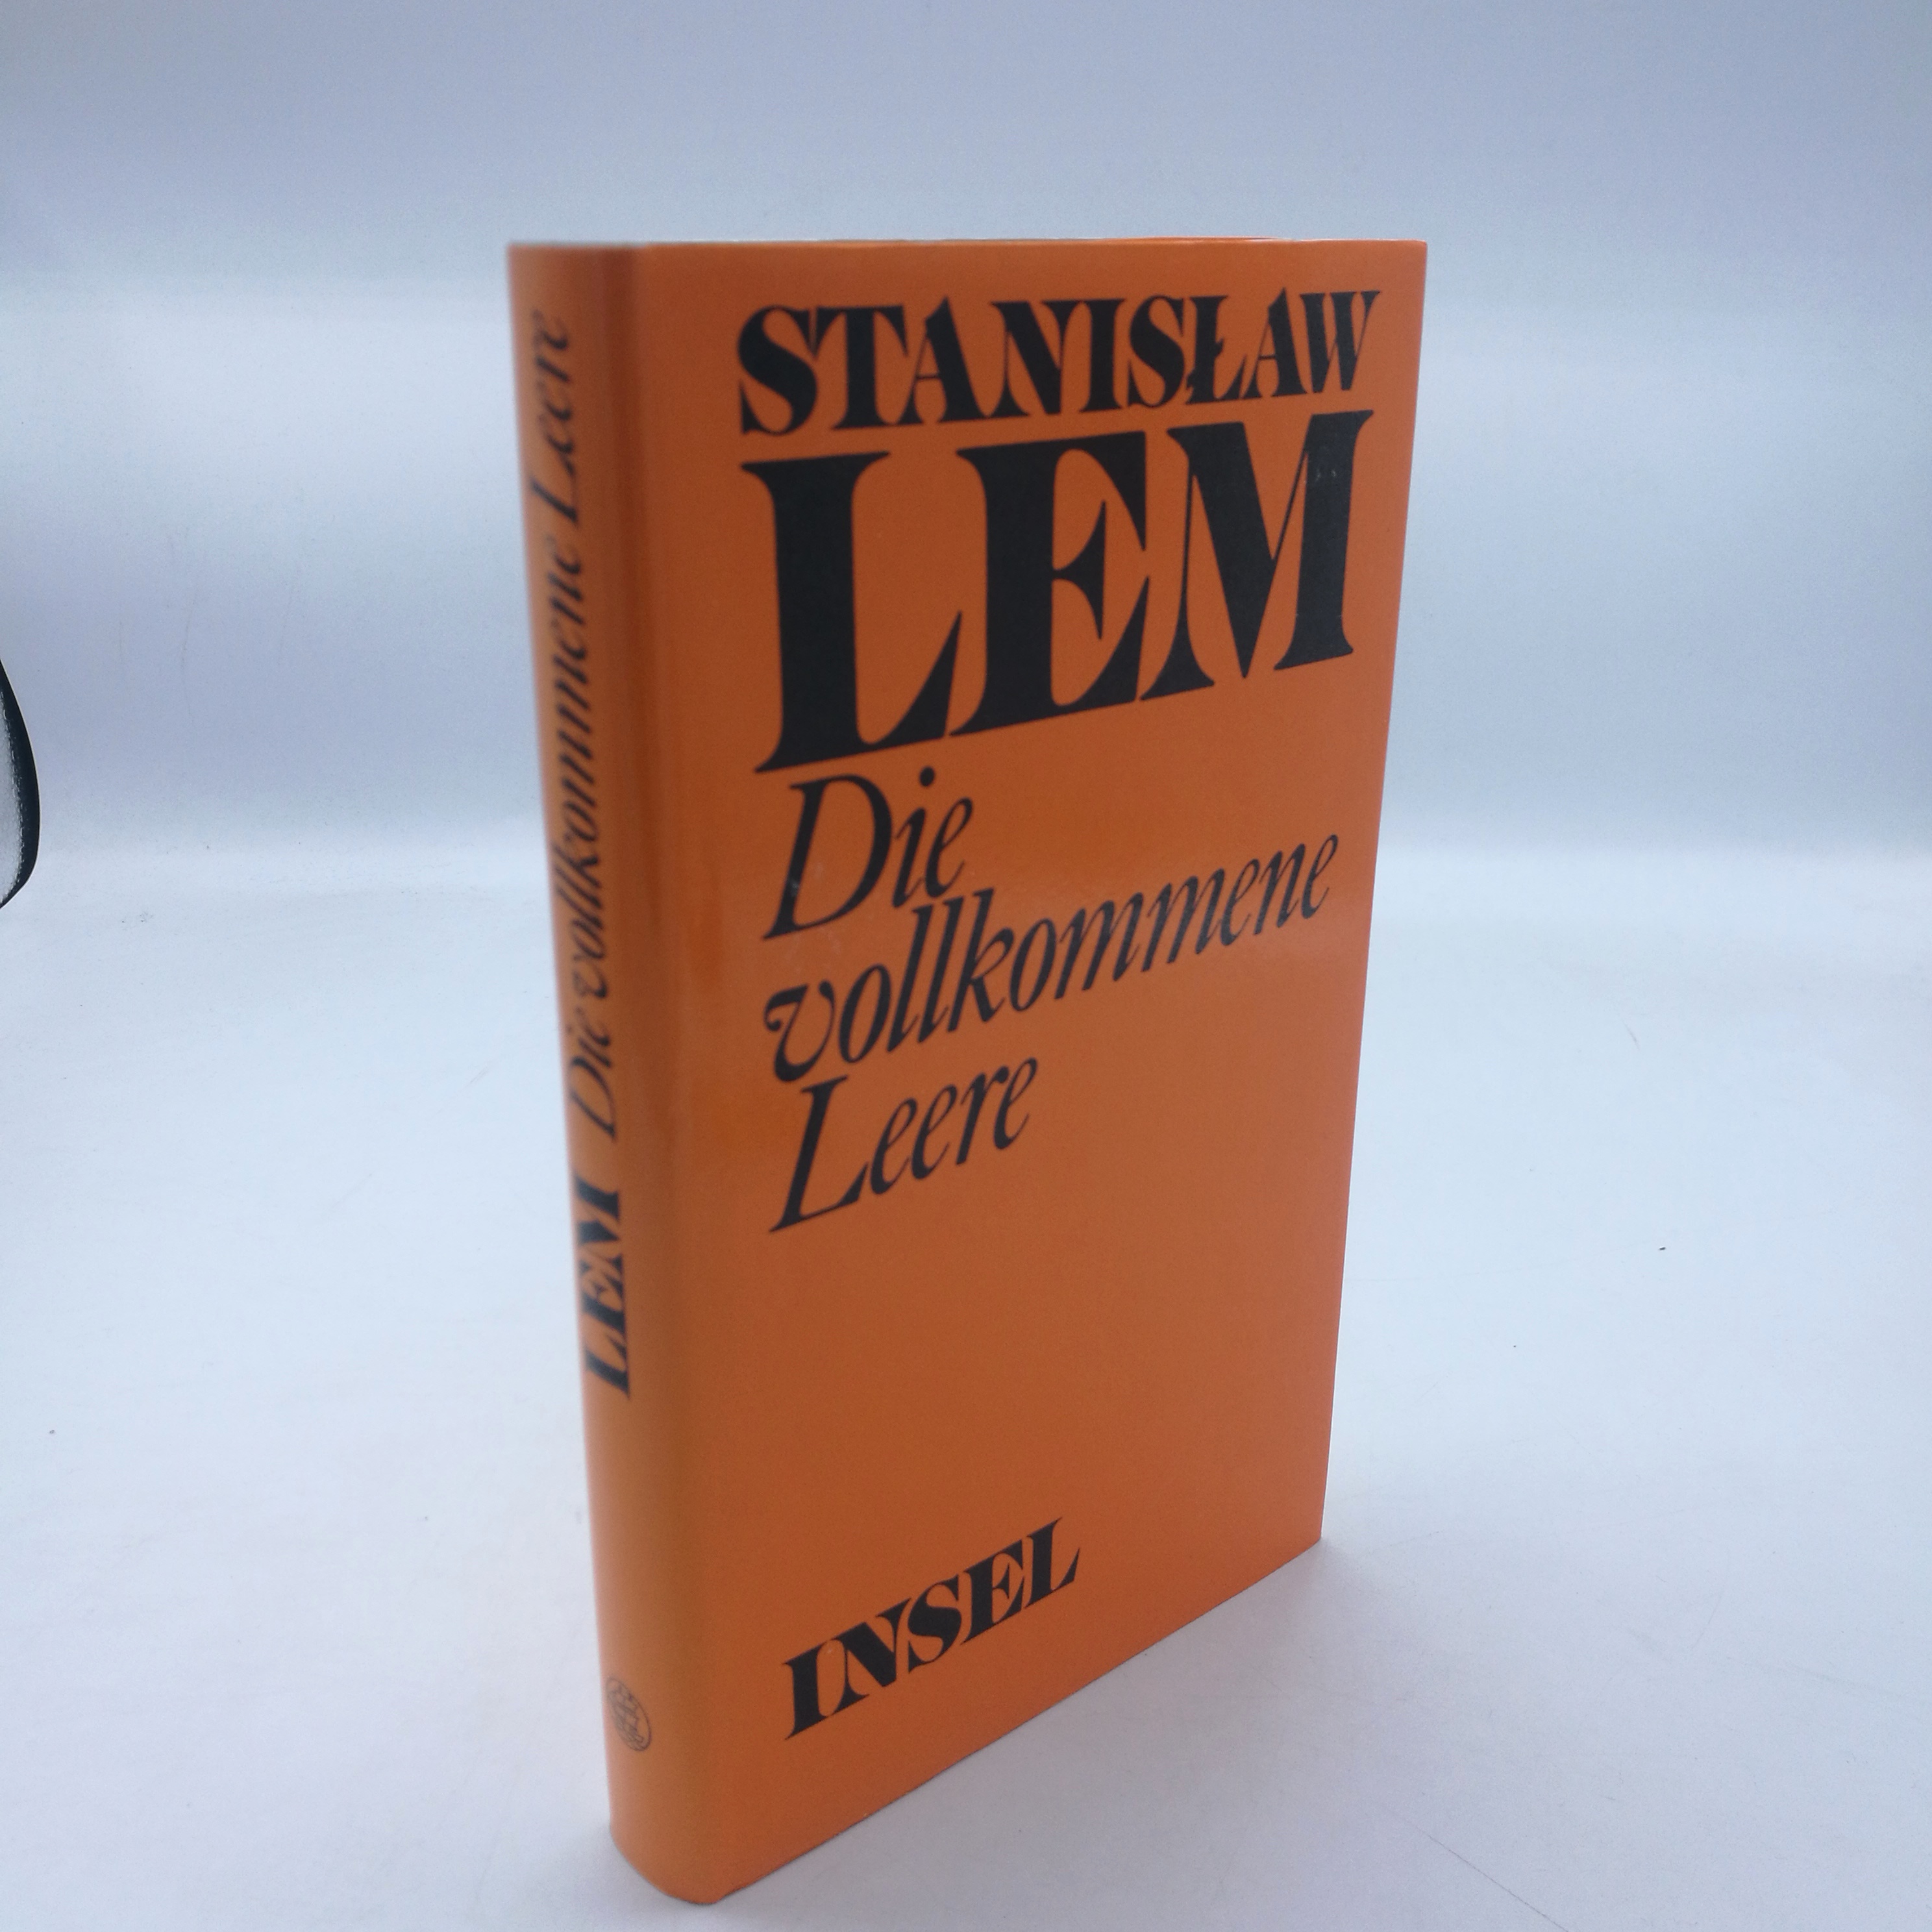 Die vollkommene Leere Werke in Einzelausgaben - Lem, Stanislaw